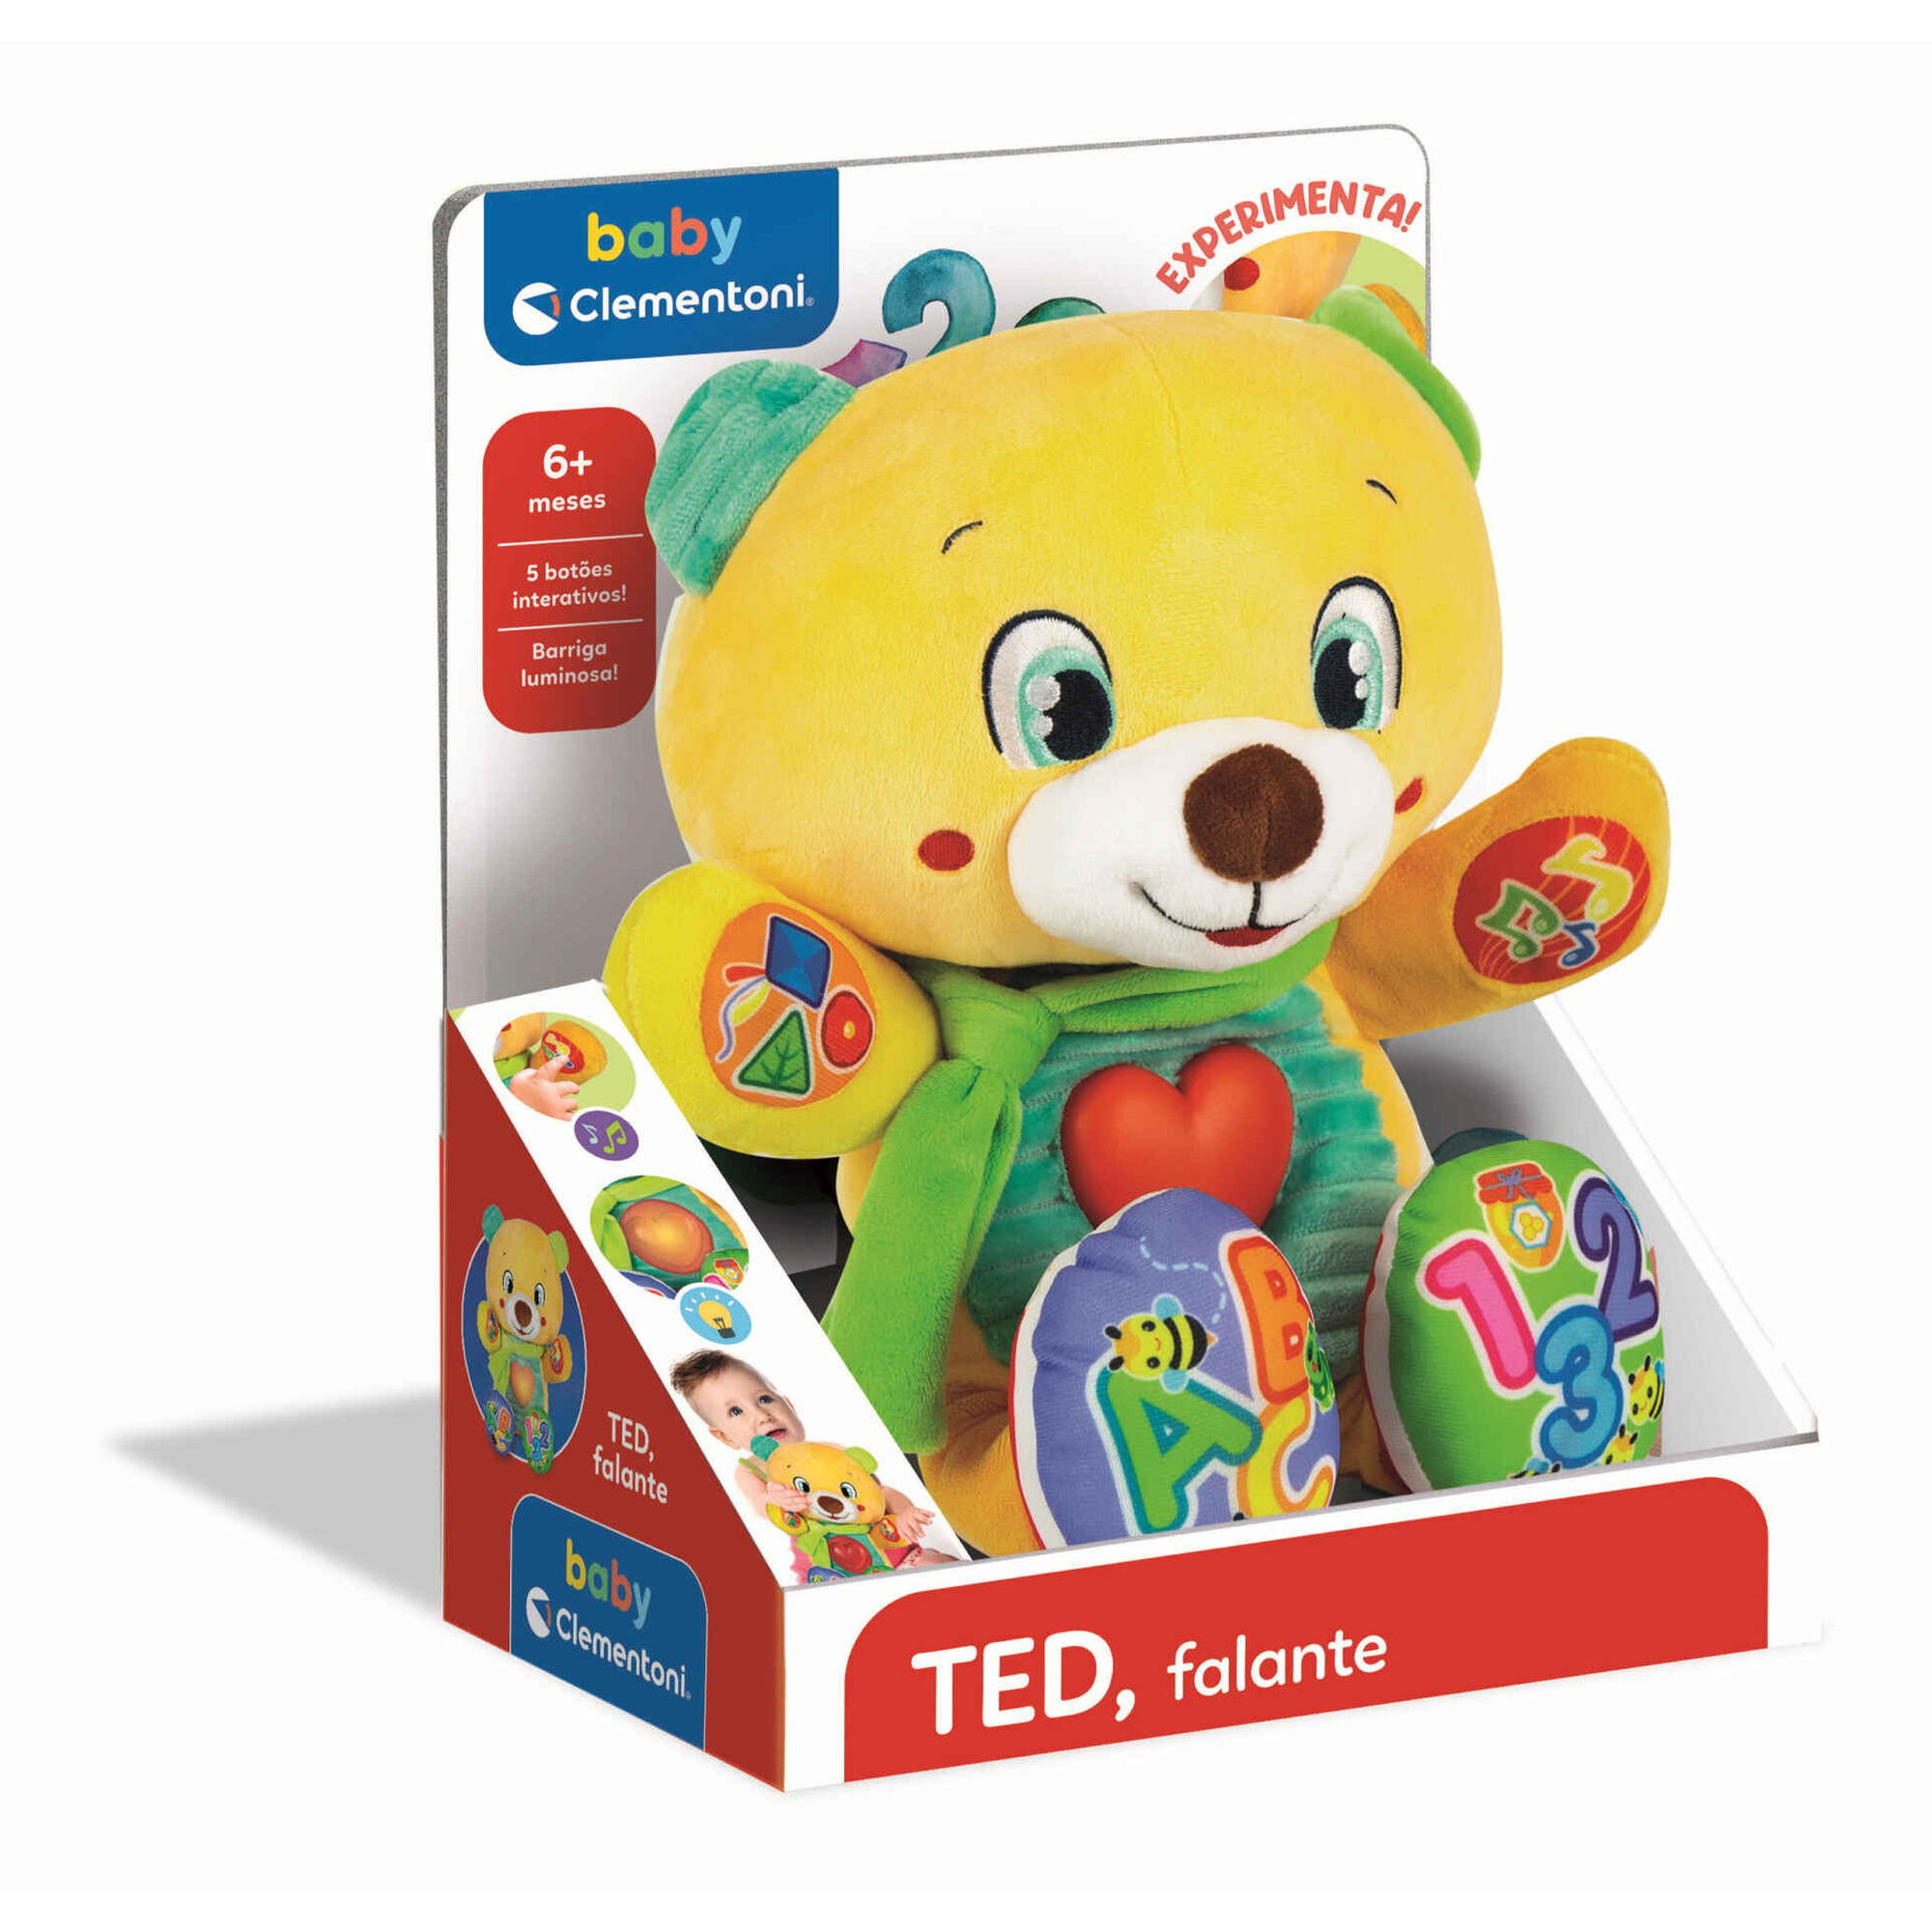 TEDY MOTOS - Dia das crianças é aqui na Tedy Motos!! Mini